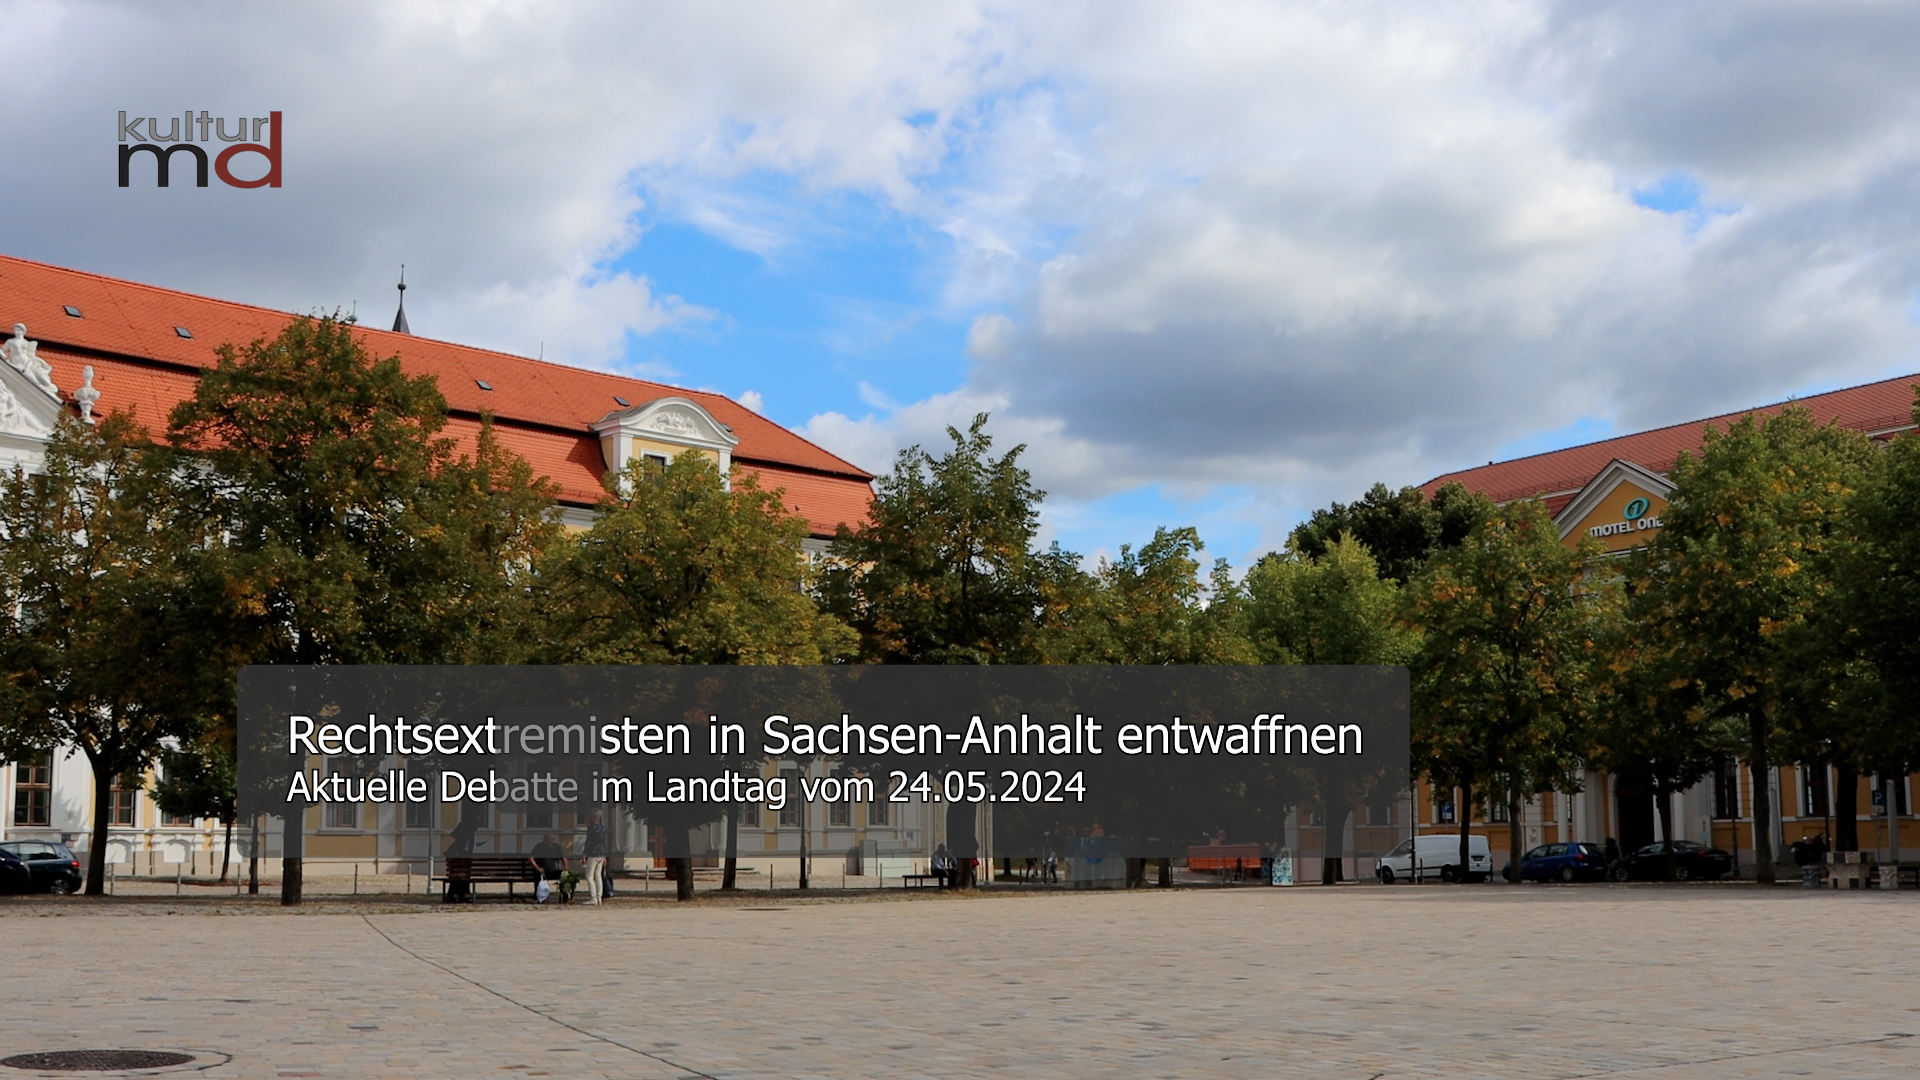 11.06.24: Rechtsextremisten in Sachsen-Anhalt entwaffnen - Aktuelle Debatte im Landtag vom 24.04.24